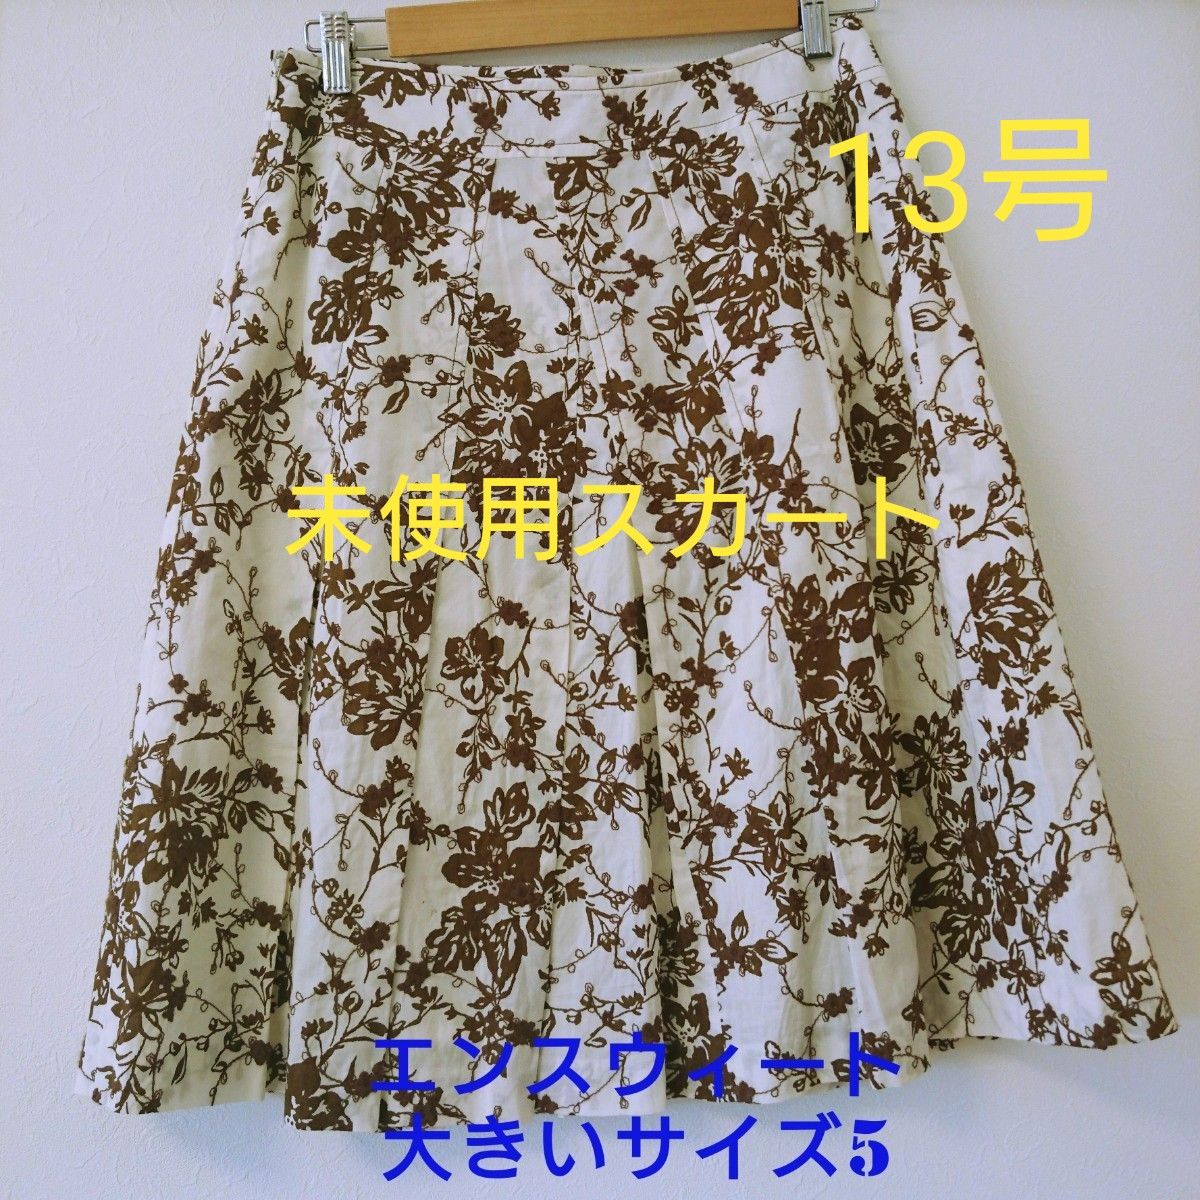 SALE【美品】エンスウィート 大きいサイズ5 刺繍プリントミモレ丈スカート コットン 刺繍 生地 13号